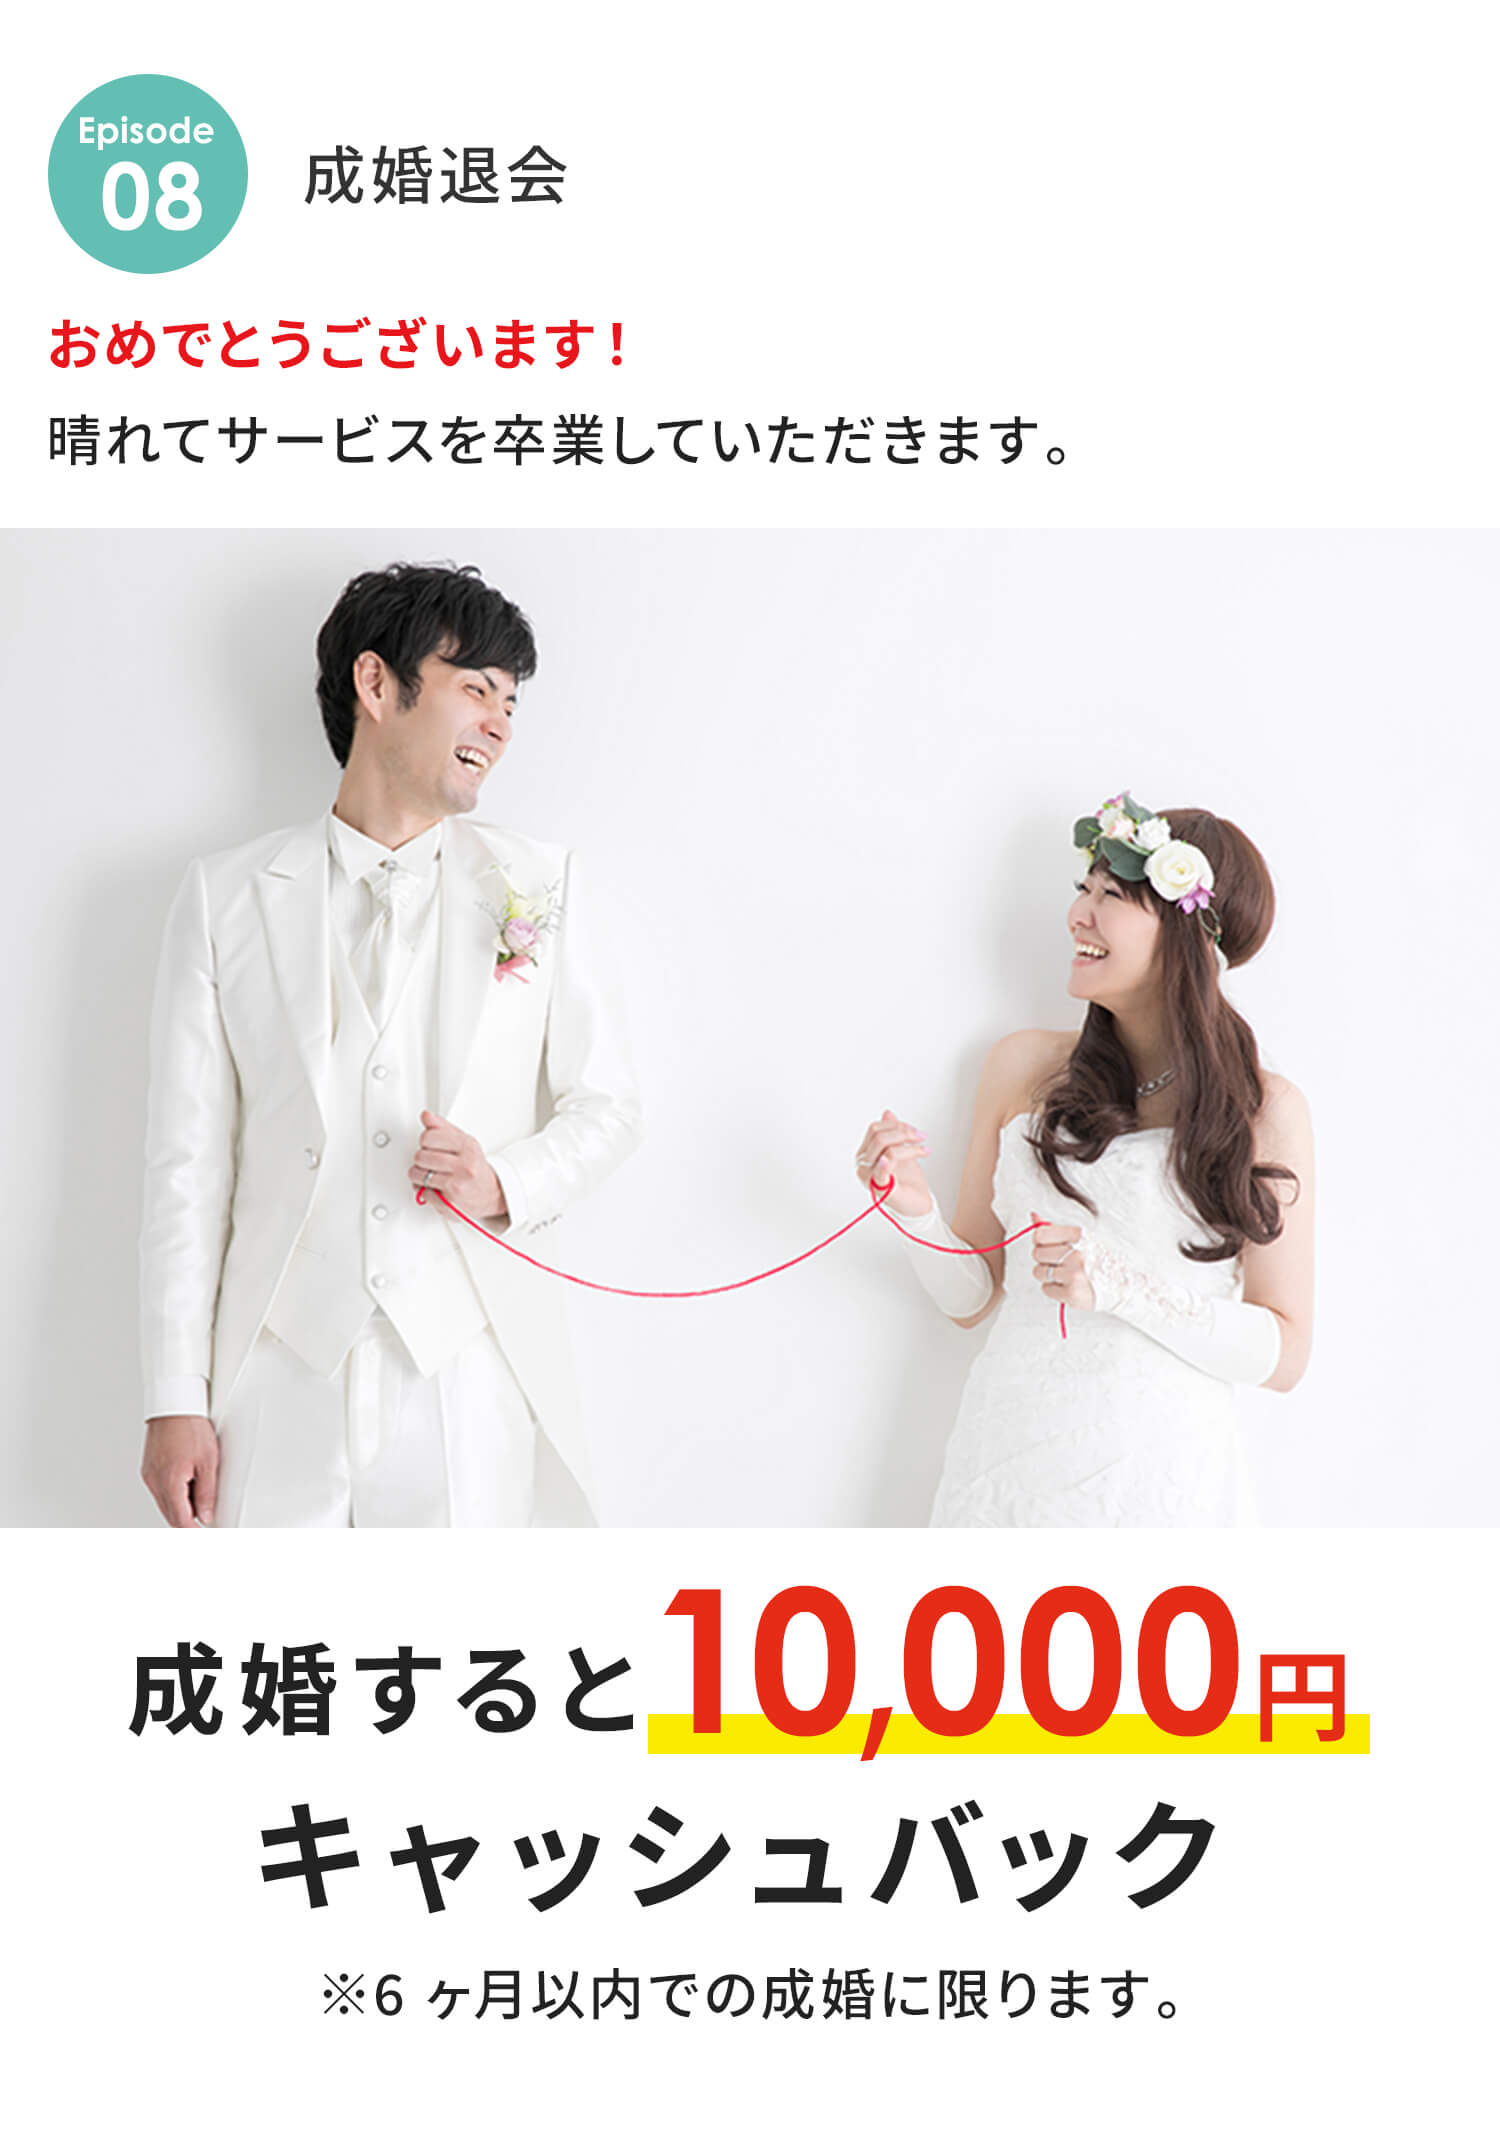 成婚退会 おめでとうございます！晴れてサービスを卒業していただきます。 成婚すると10,000円キャッシュバック ※6ヶ月以内での成婚に限ります。